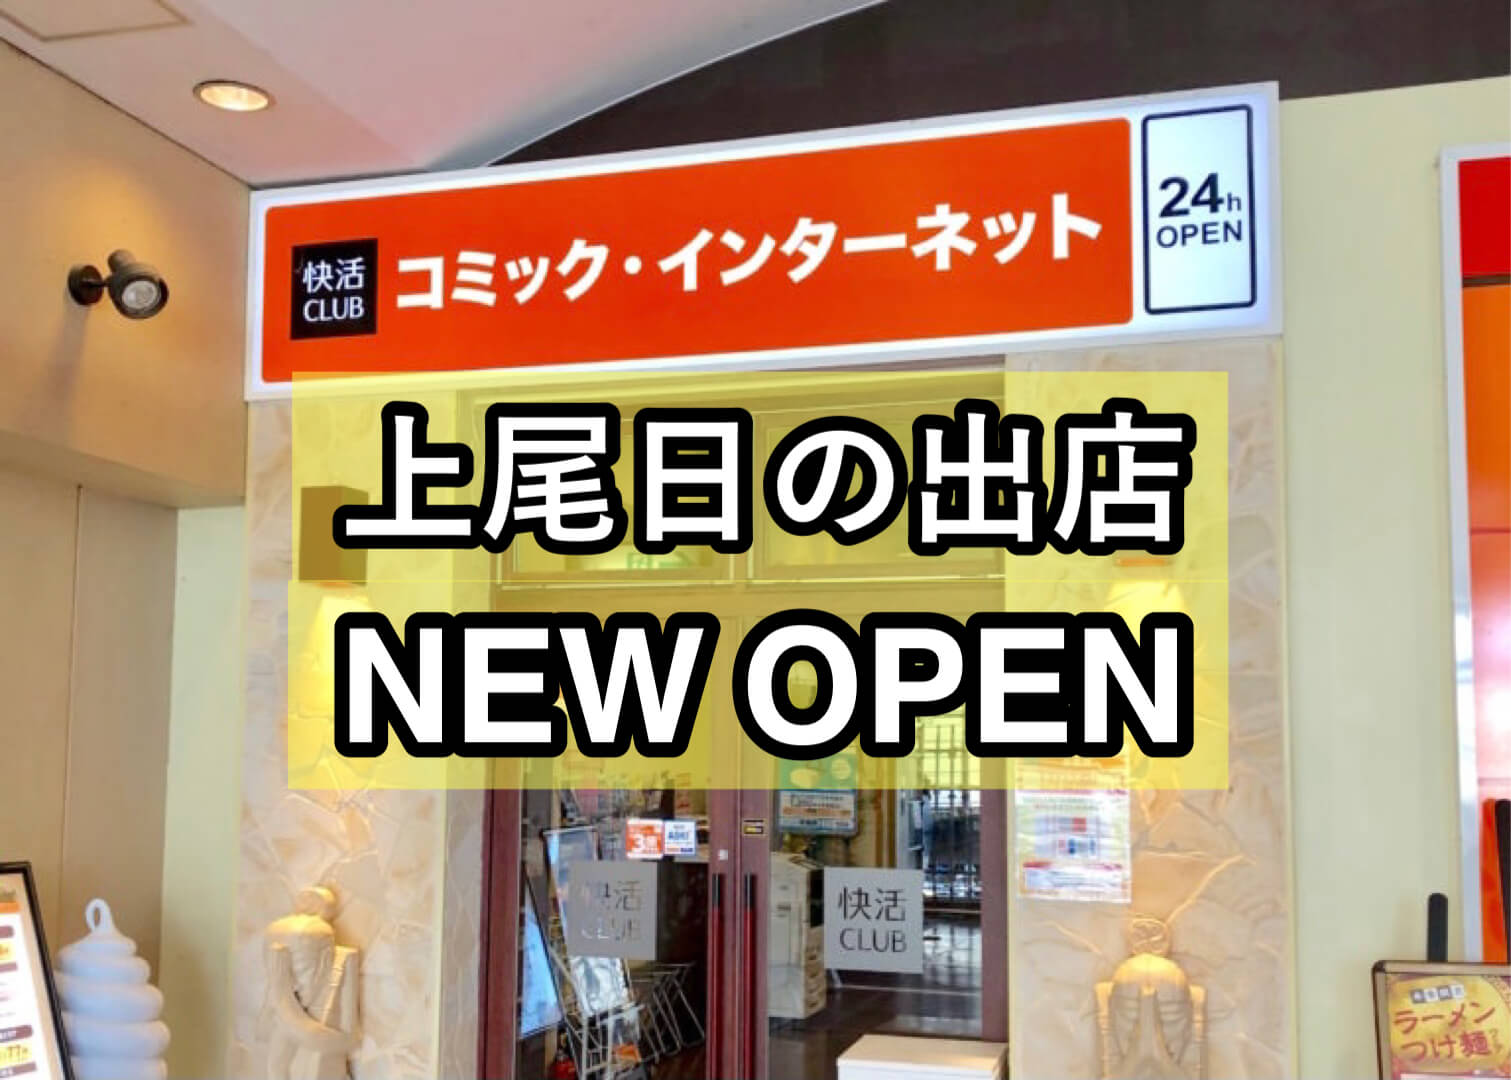 ネットカフェ 快活club 上尾日の出店 がオープン カラオケもできる さいたまっぷる